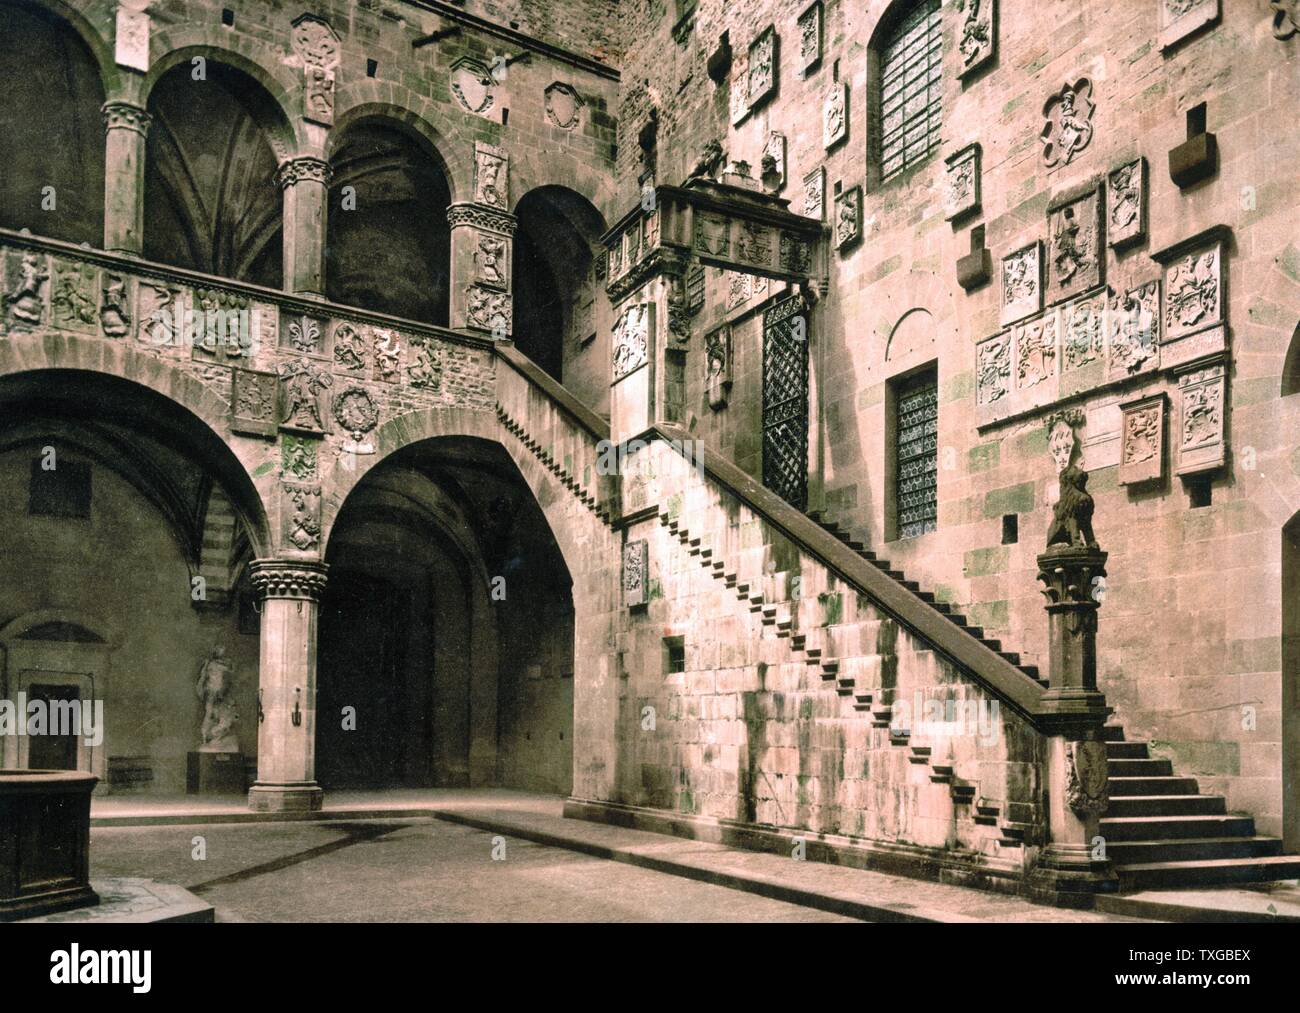 Musée royal, la cour (c.-à-d. Le Musée Bargello, la cour intérieure), Florence Italie 1890 Banque D'Images